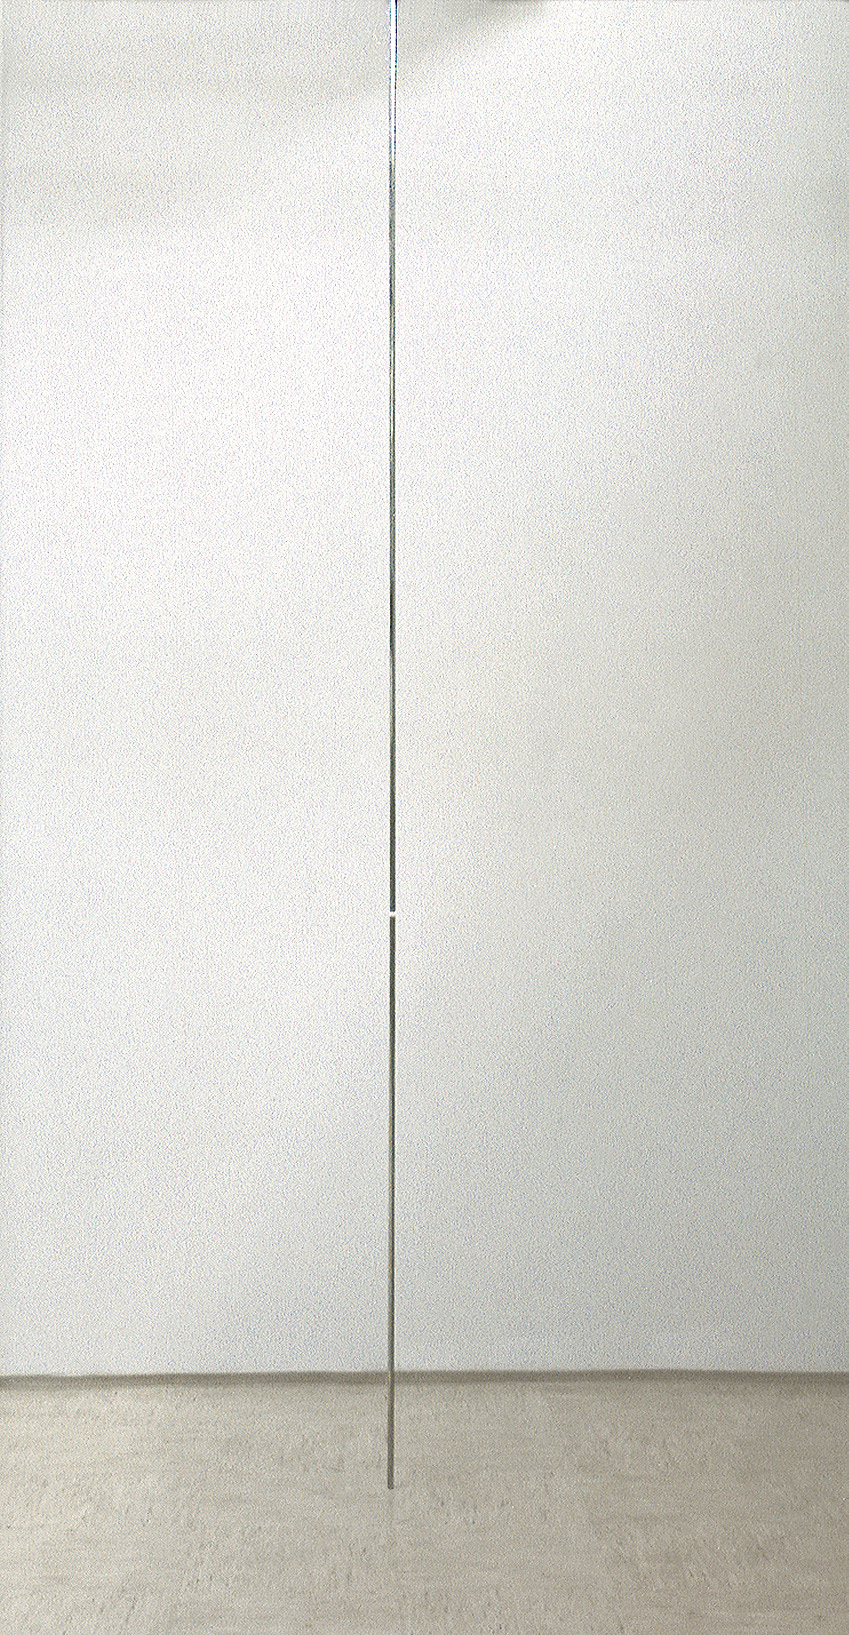 nerjaveče jeklo, 600 x 1,5 x 1,5  cm, 1998